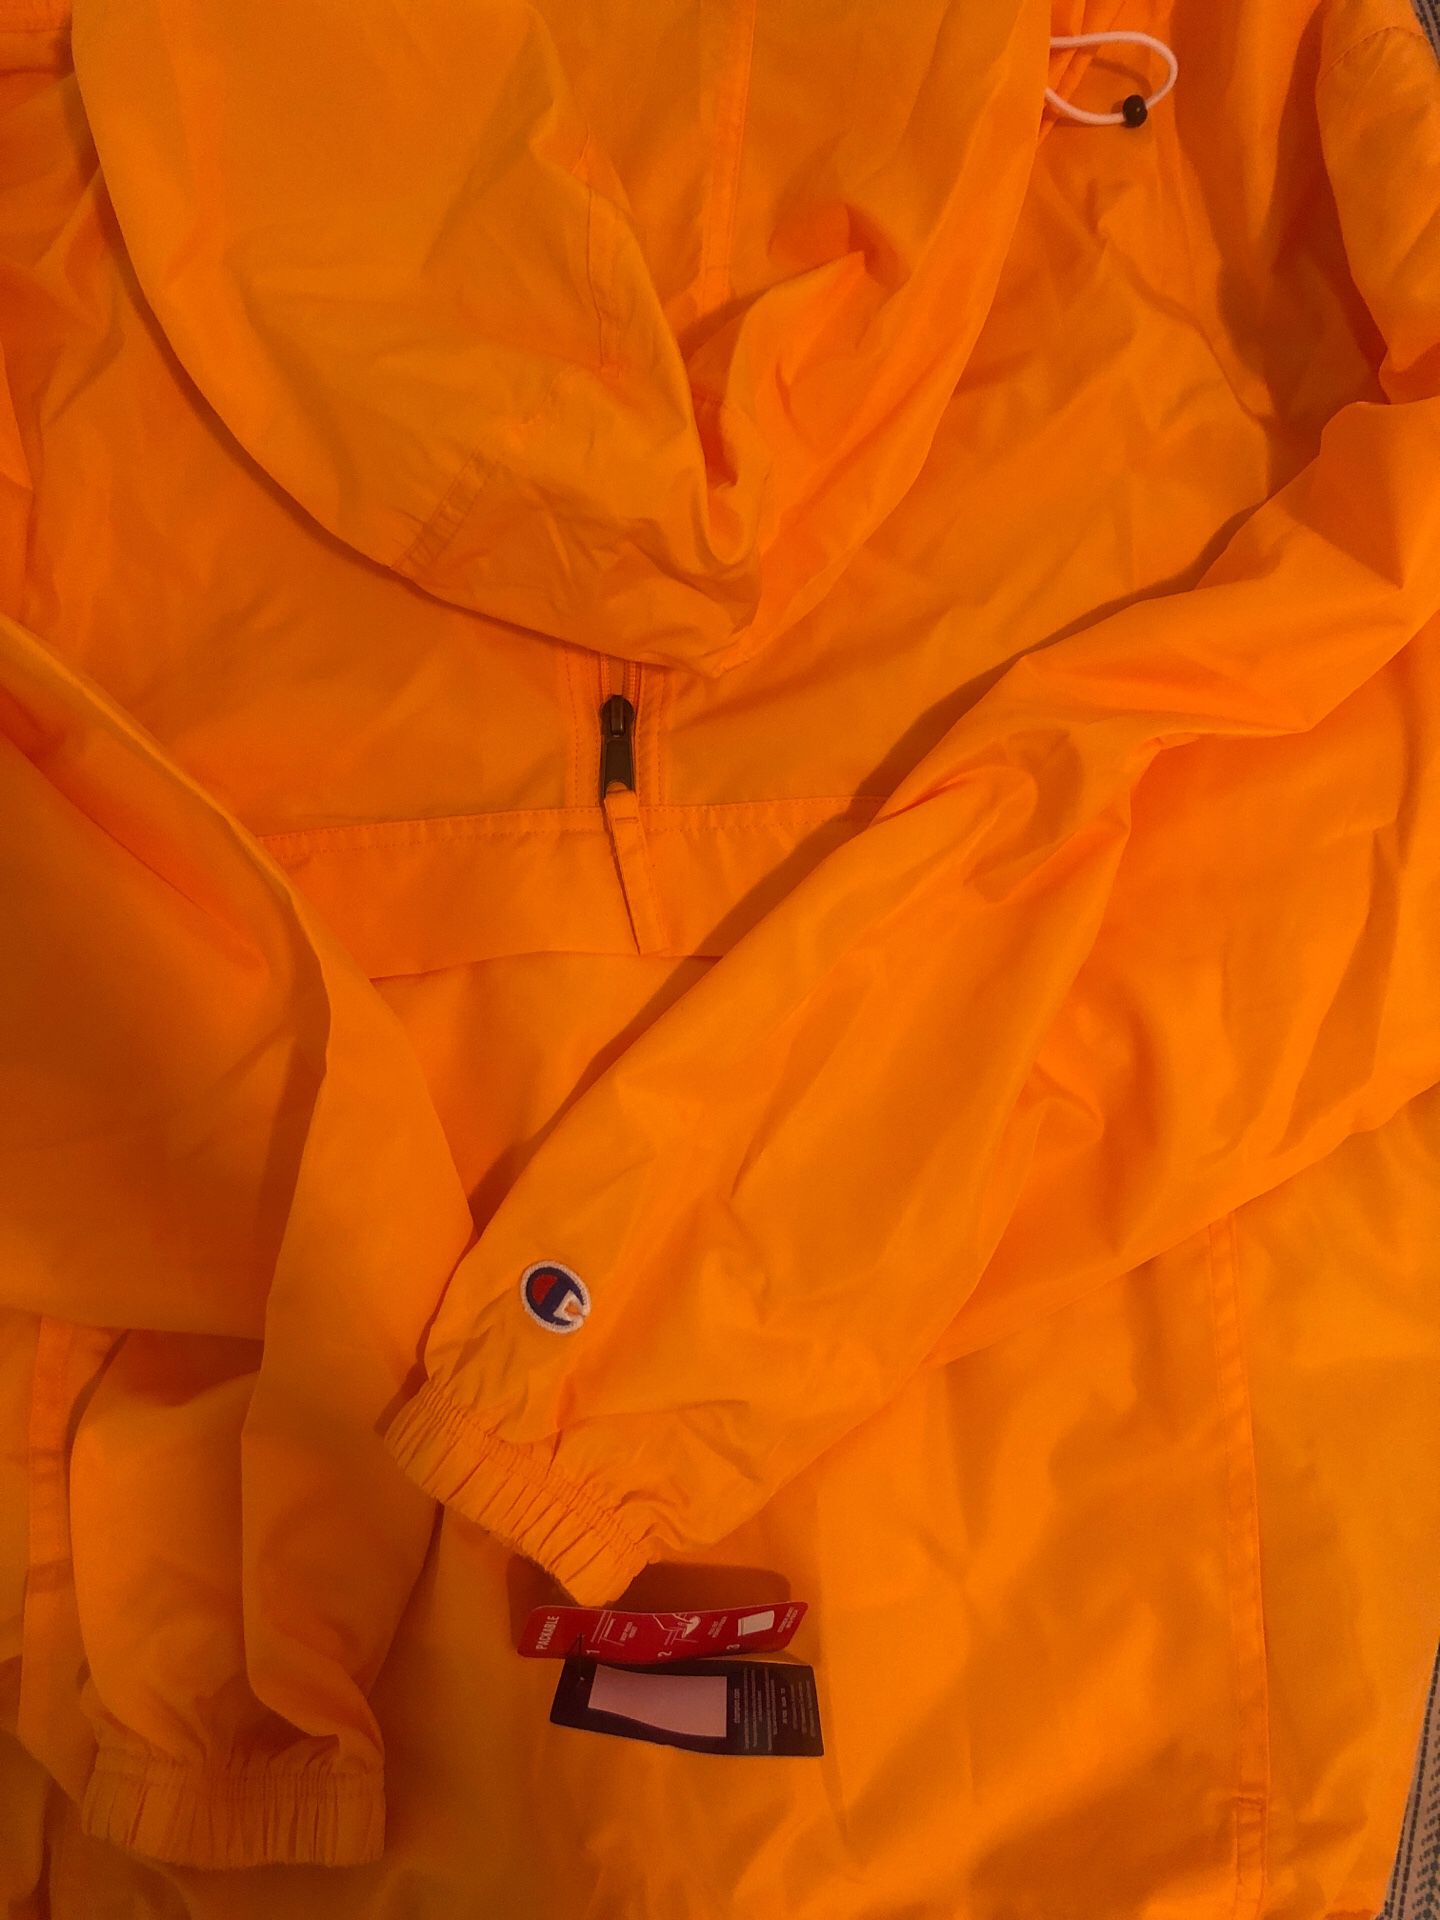 CHAMPION Jacket (Medium) Hoodie Windbreaker Rain